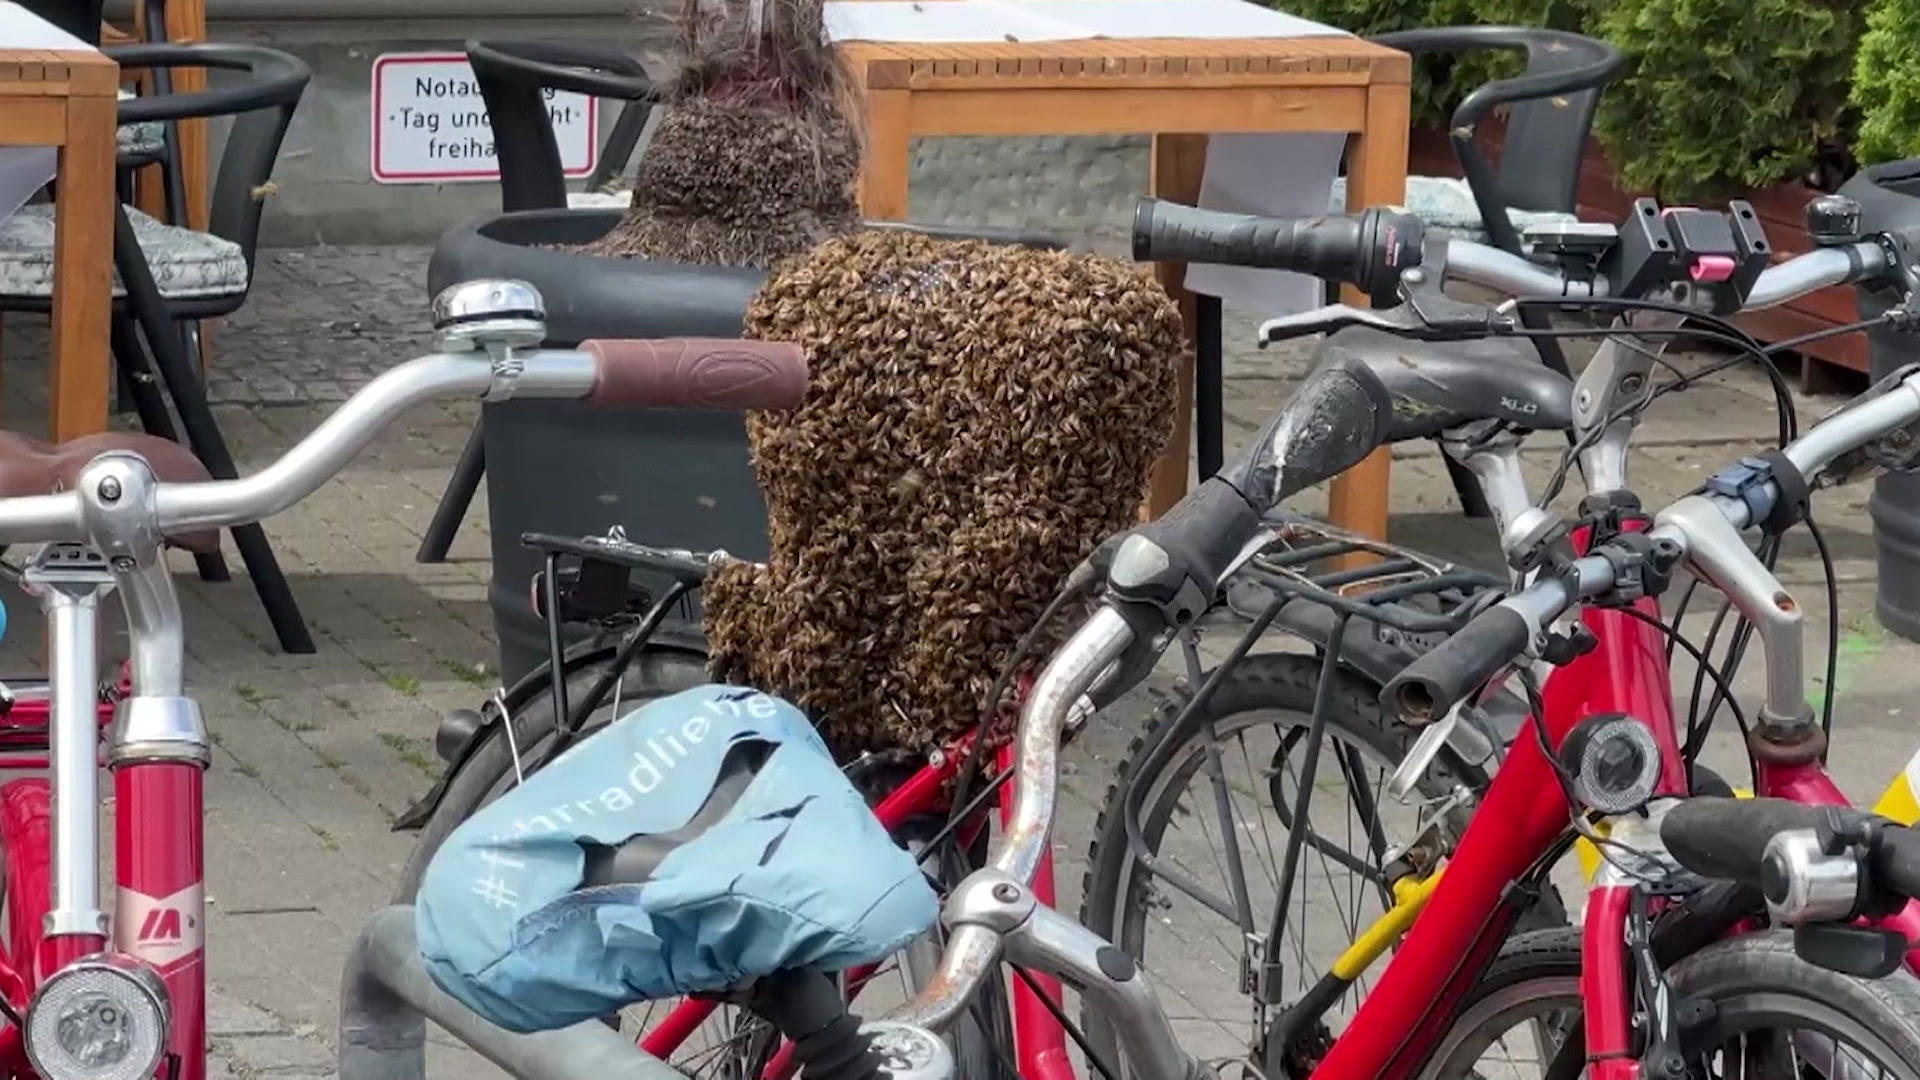 Bienenschwarm on Tour! Königin besetzt Fahrrad Sattel statt Blümchen